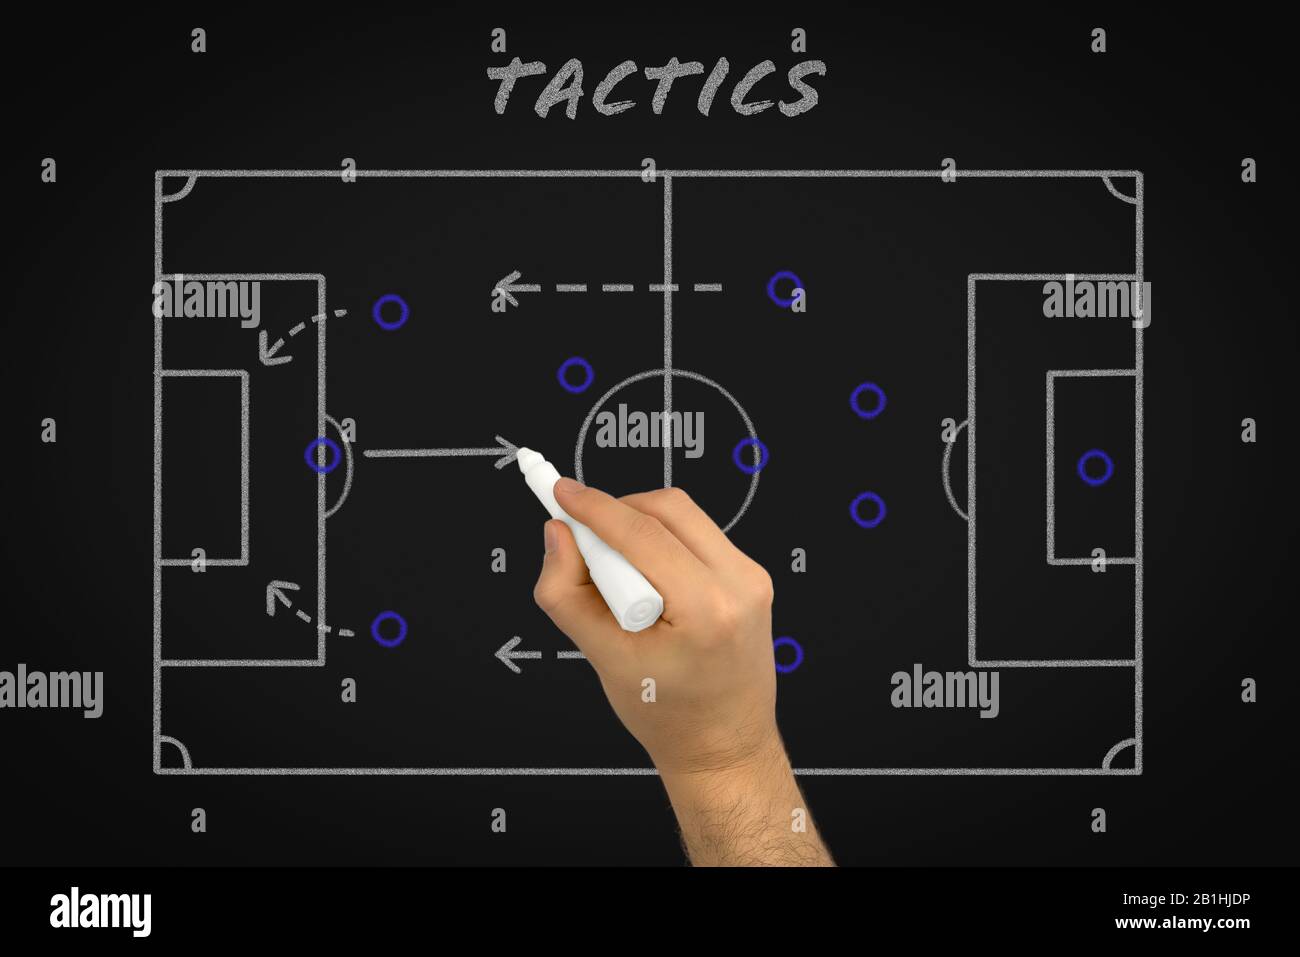 Pizarra Tactica De Futbol Atletic Magnetica